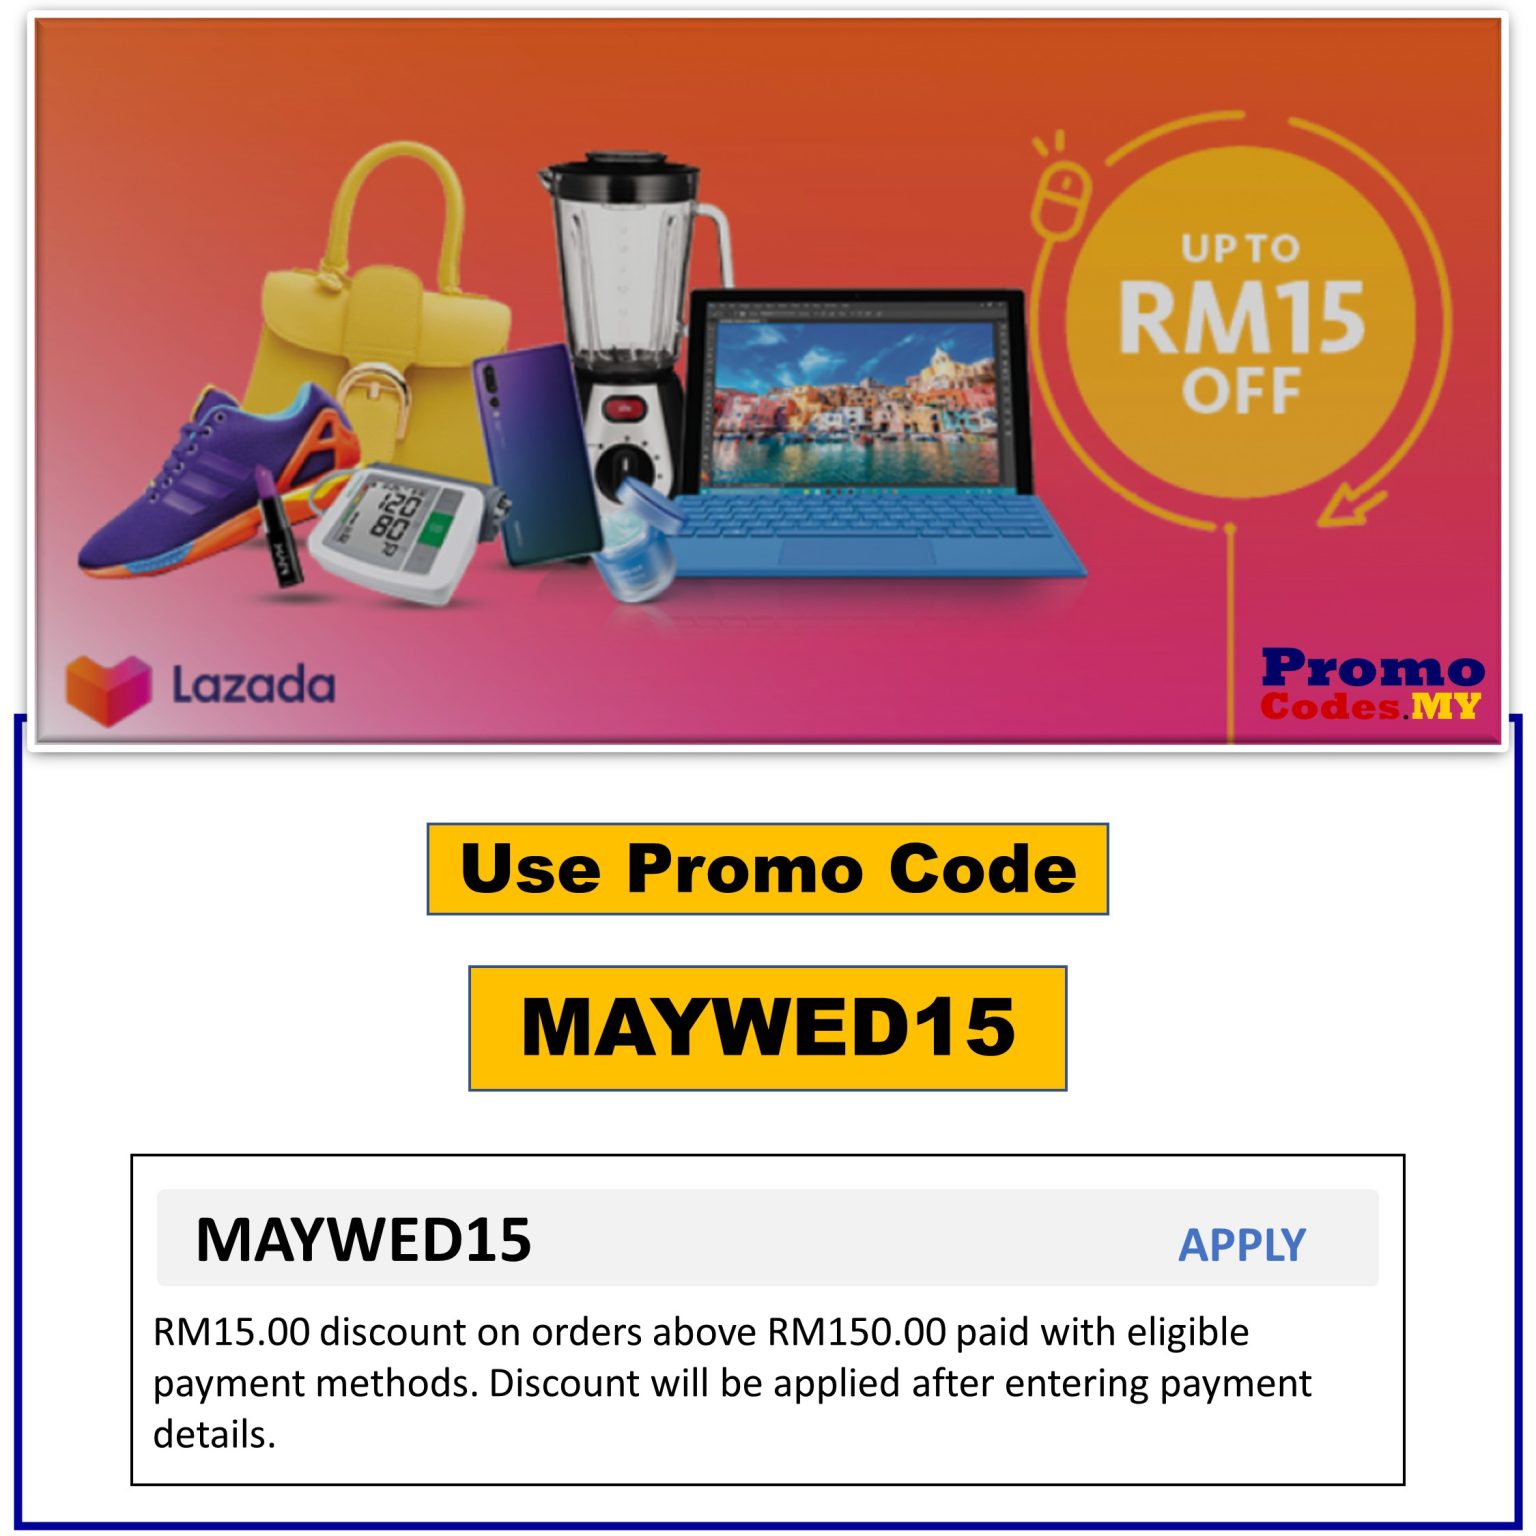 promocodes maybank wednesday MAYWED15